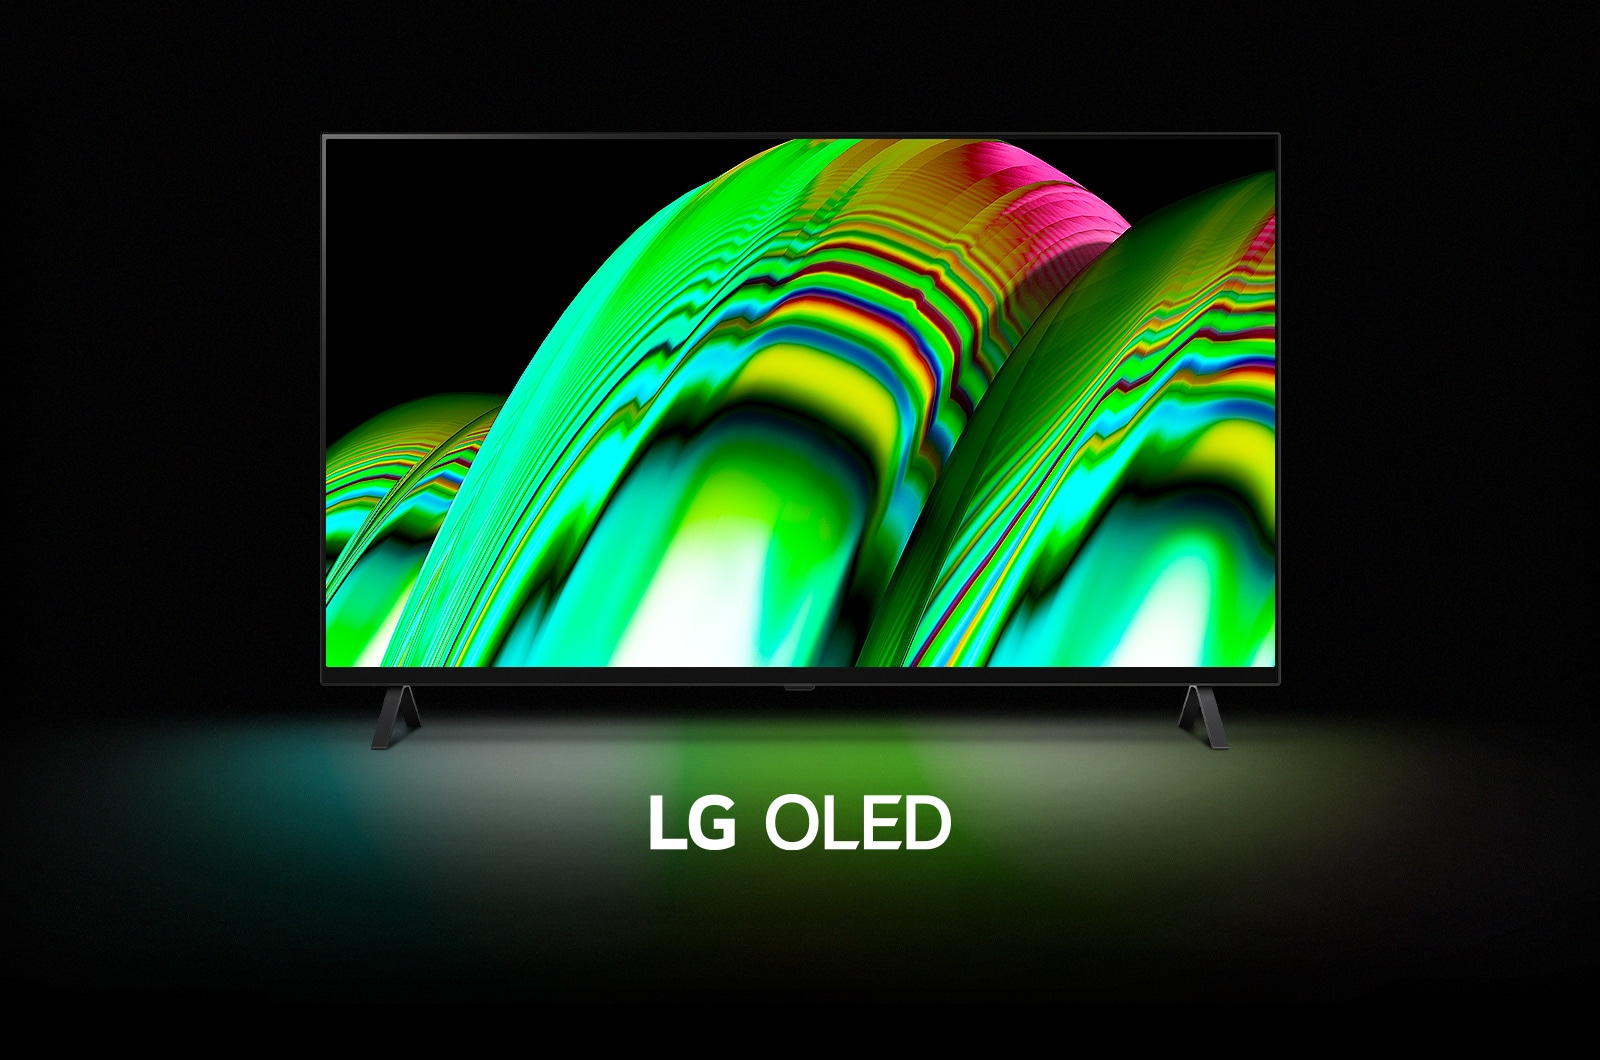 Zielony abstrakcyjny wzór fali wypełnia ekran, po czym stopniowo oddala się, ukazując telewizor LG OLED A2. Ekran robi się czarny, następnie ponownie pojawia się na nim wzór fali z napisem „LG OLED” pod spodem.